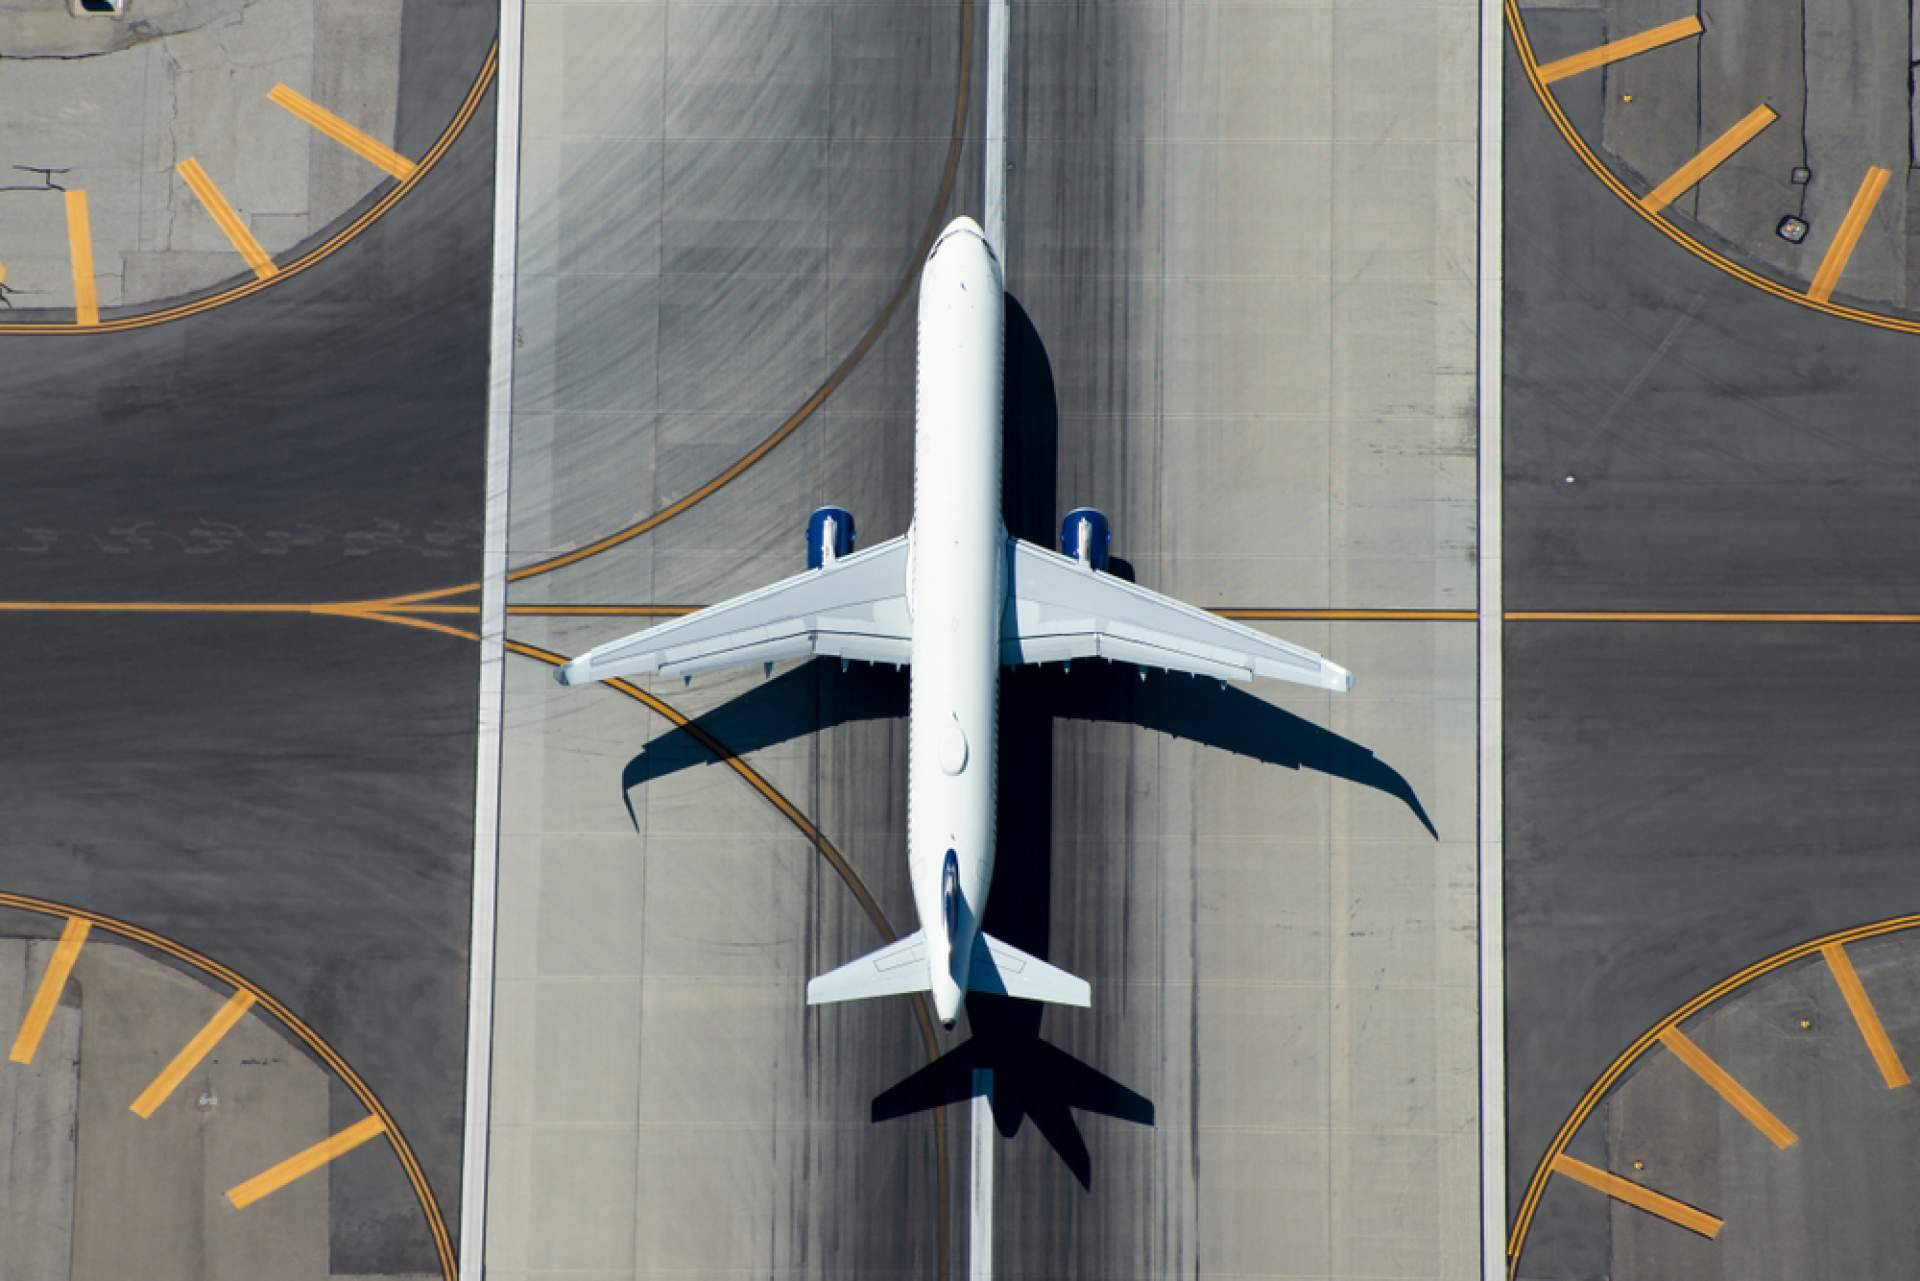  En el mercado de la aviación las herramientas dinamométricas son muy importantes, ¿por qué? 